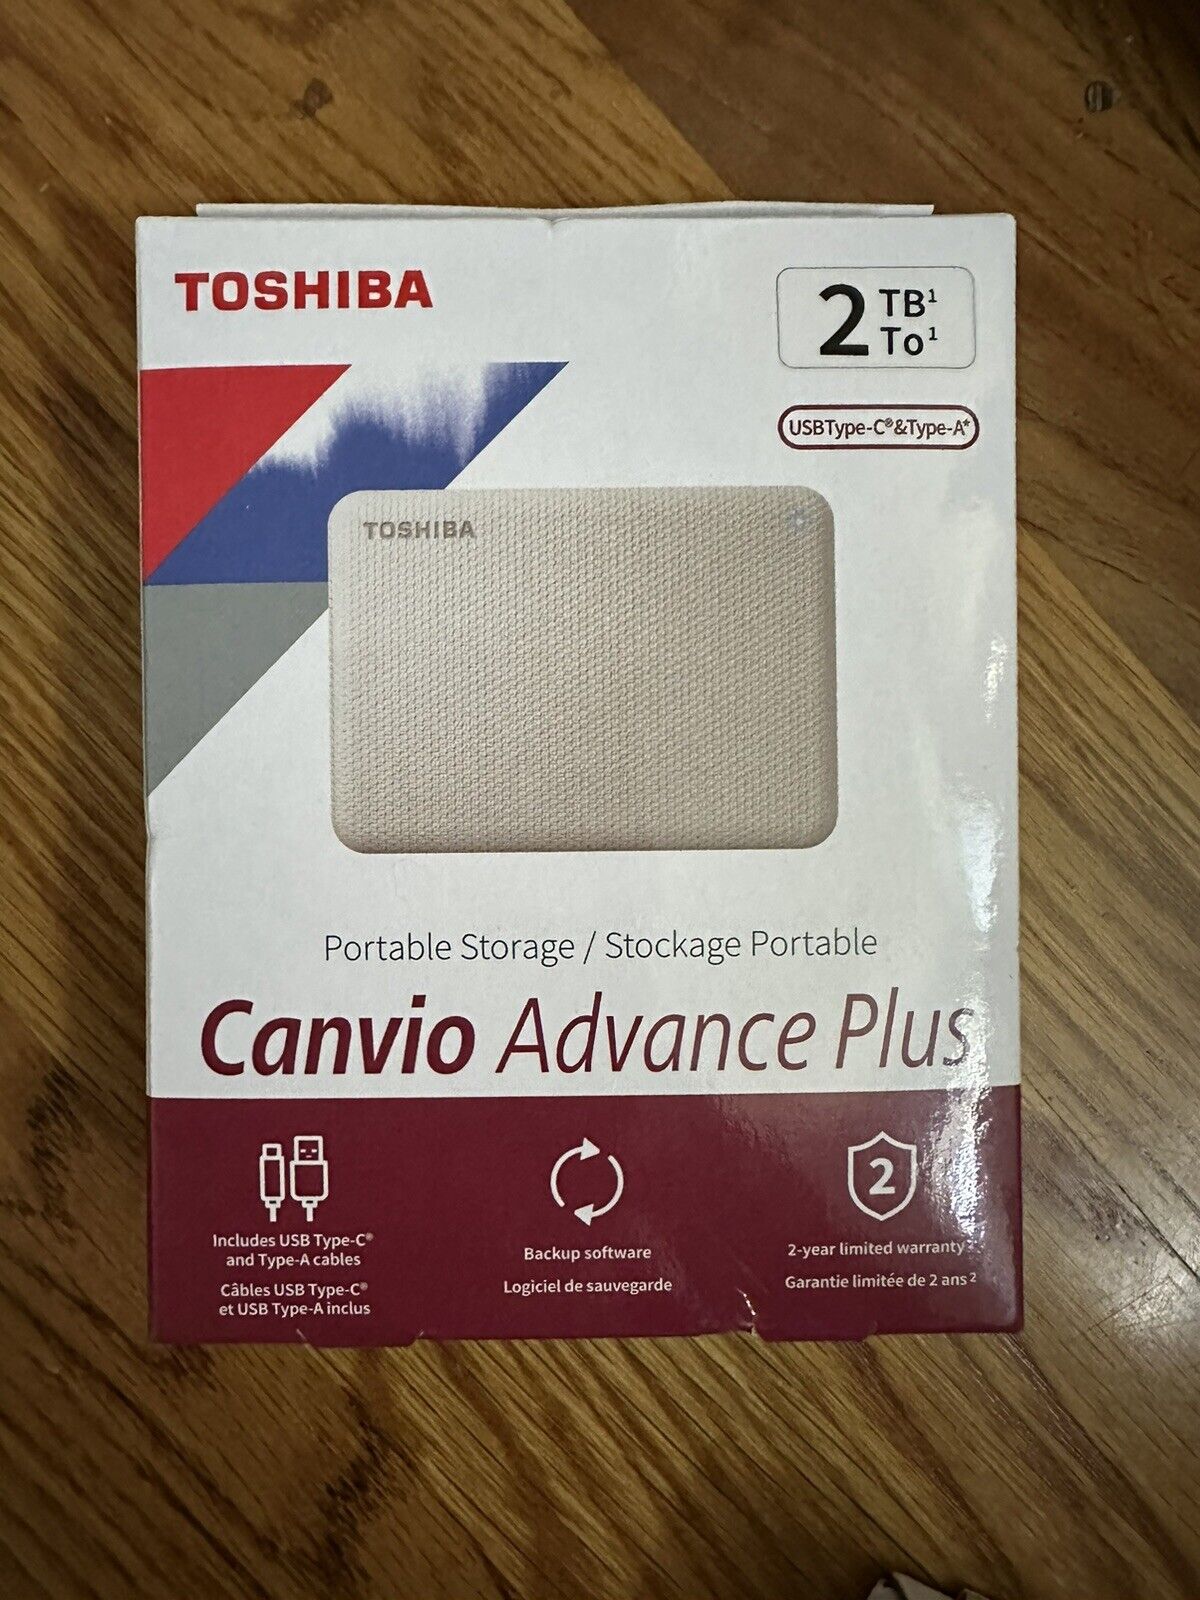 Toshiba canvio advance 2 tb portable storage *New